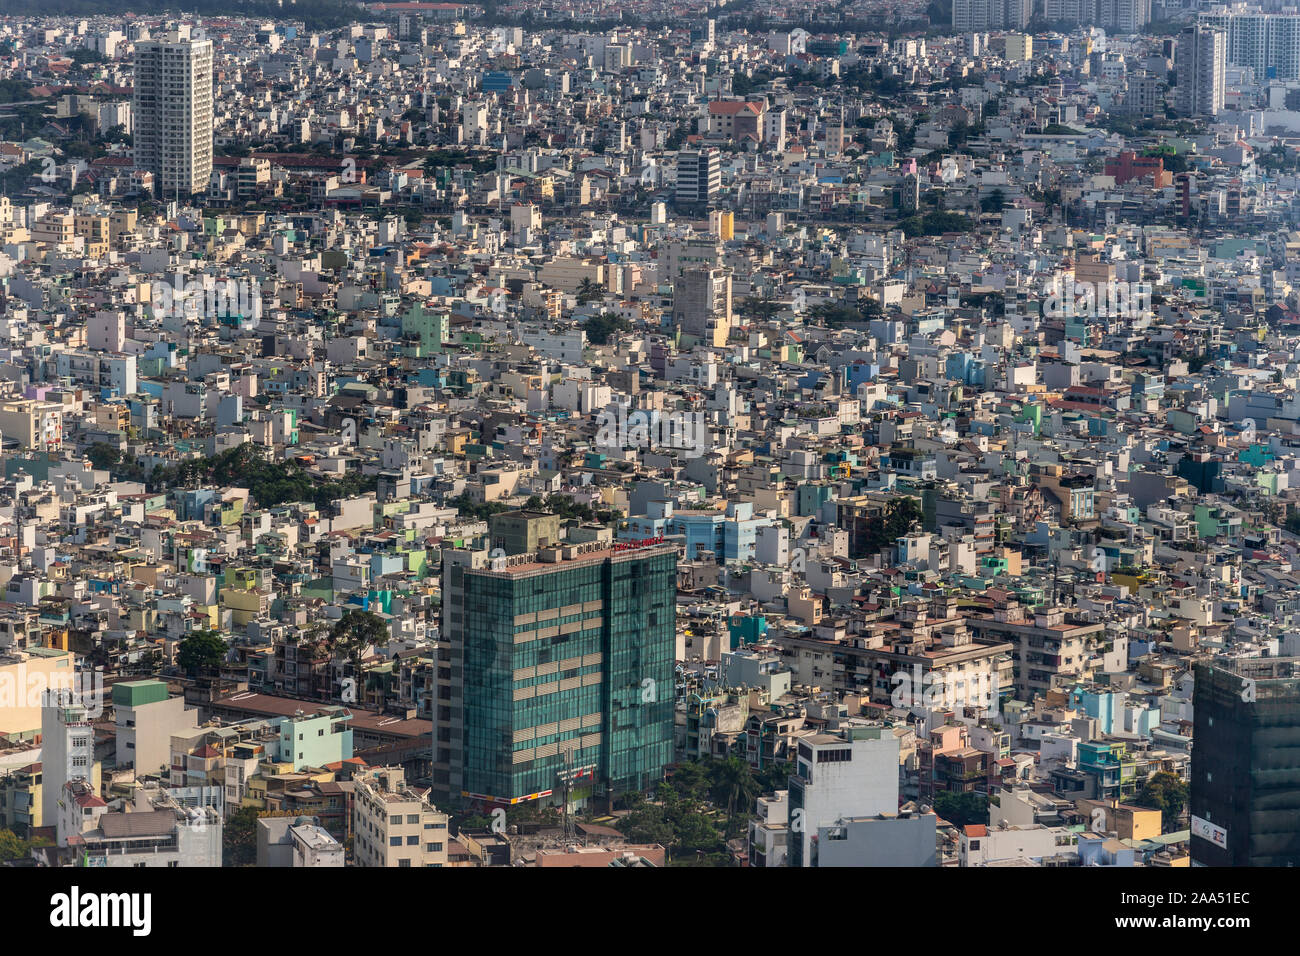 Ho Chi Minh City, Vietnam - 12. März 2019: Innenstadt. Dinh Le Green hohes Gebäude in einem Meer der unteren mittleren Gehäuse, einem Dschungel aus Beton. Foto gefüllt wit Stockfoto